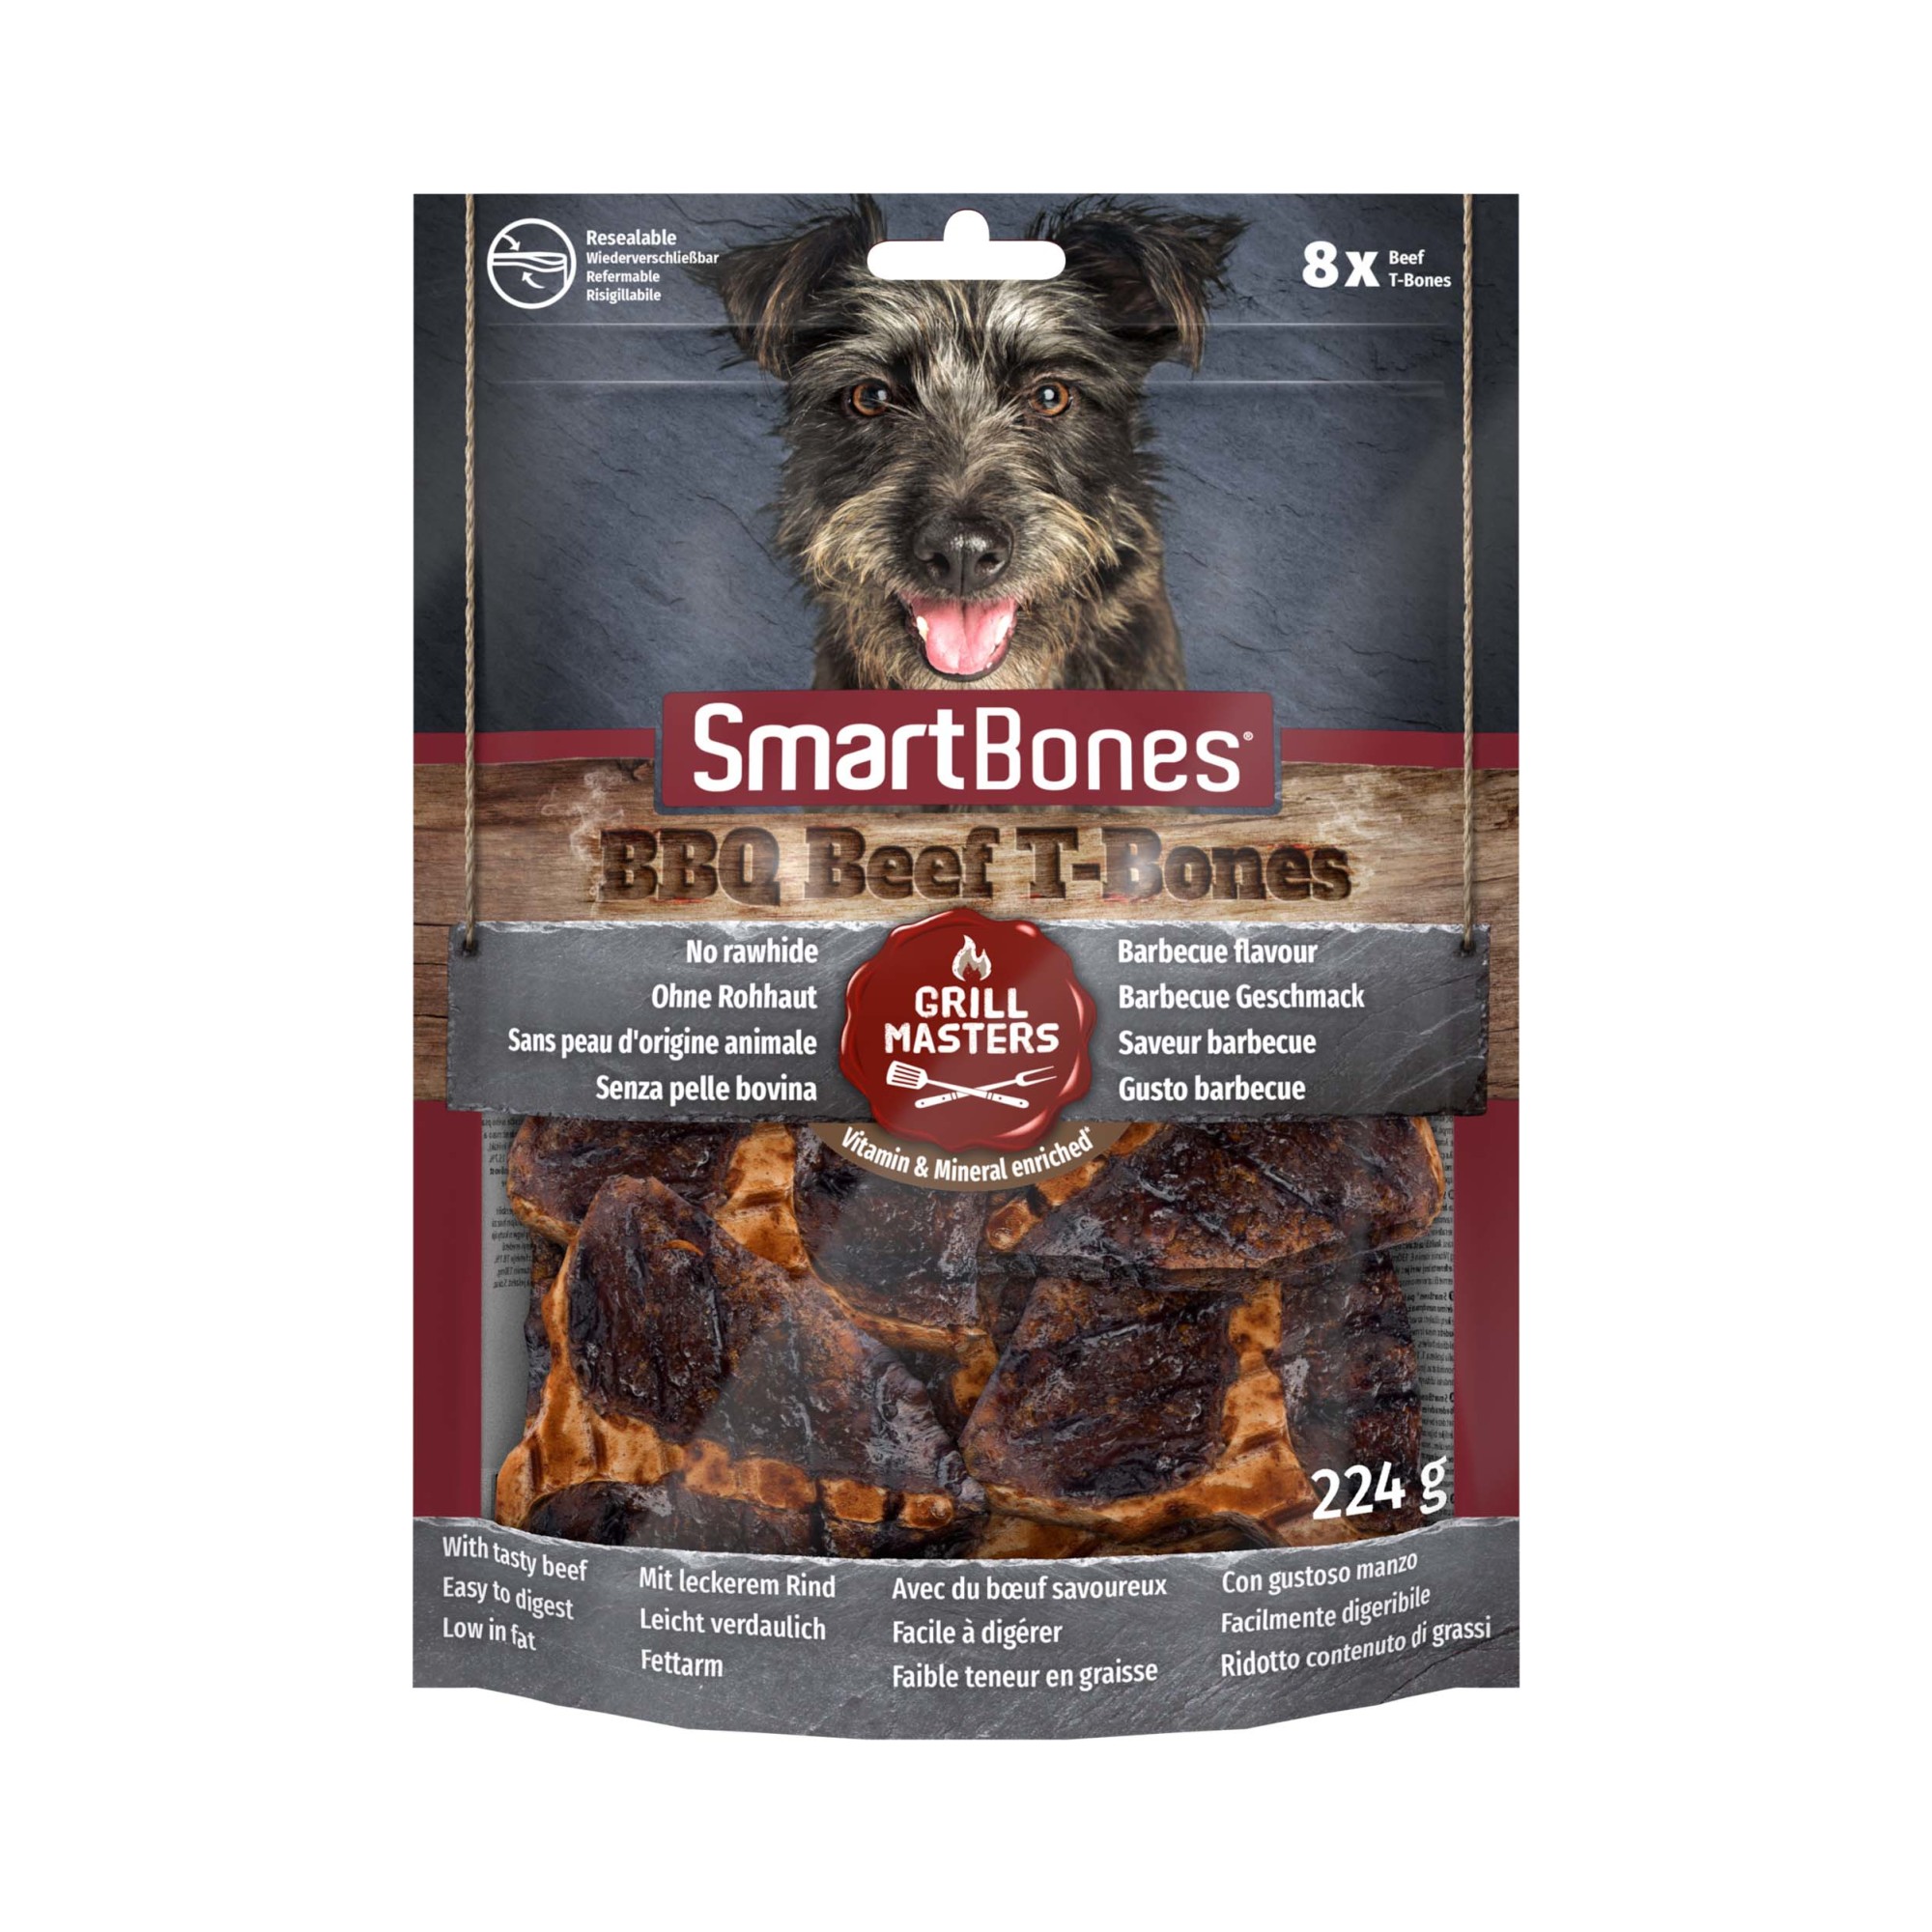 Køb SmartBones BBQ Beef T-Bones til din hund Tinybuddy